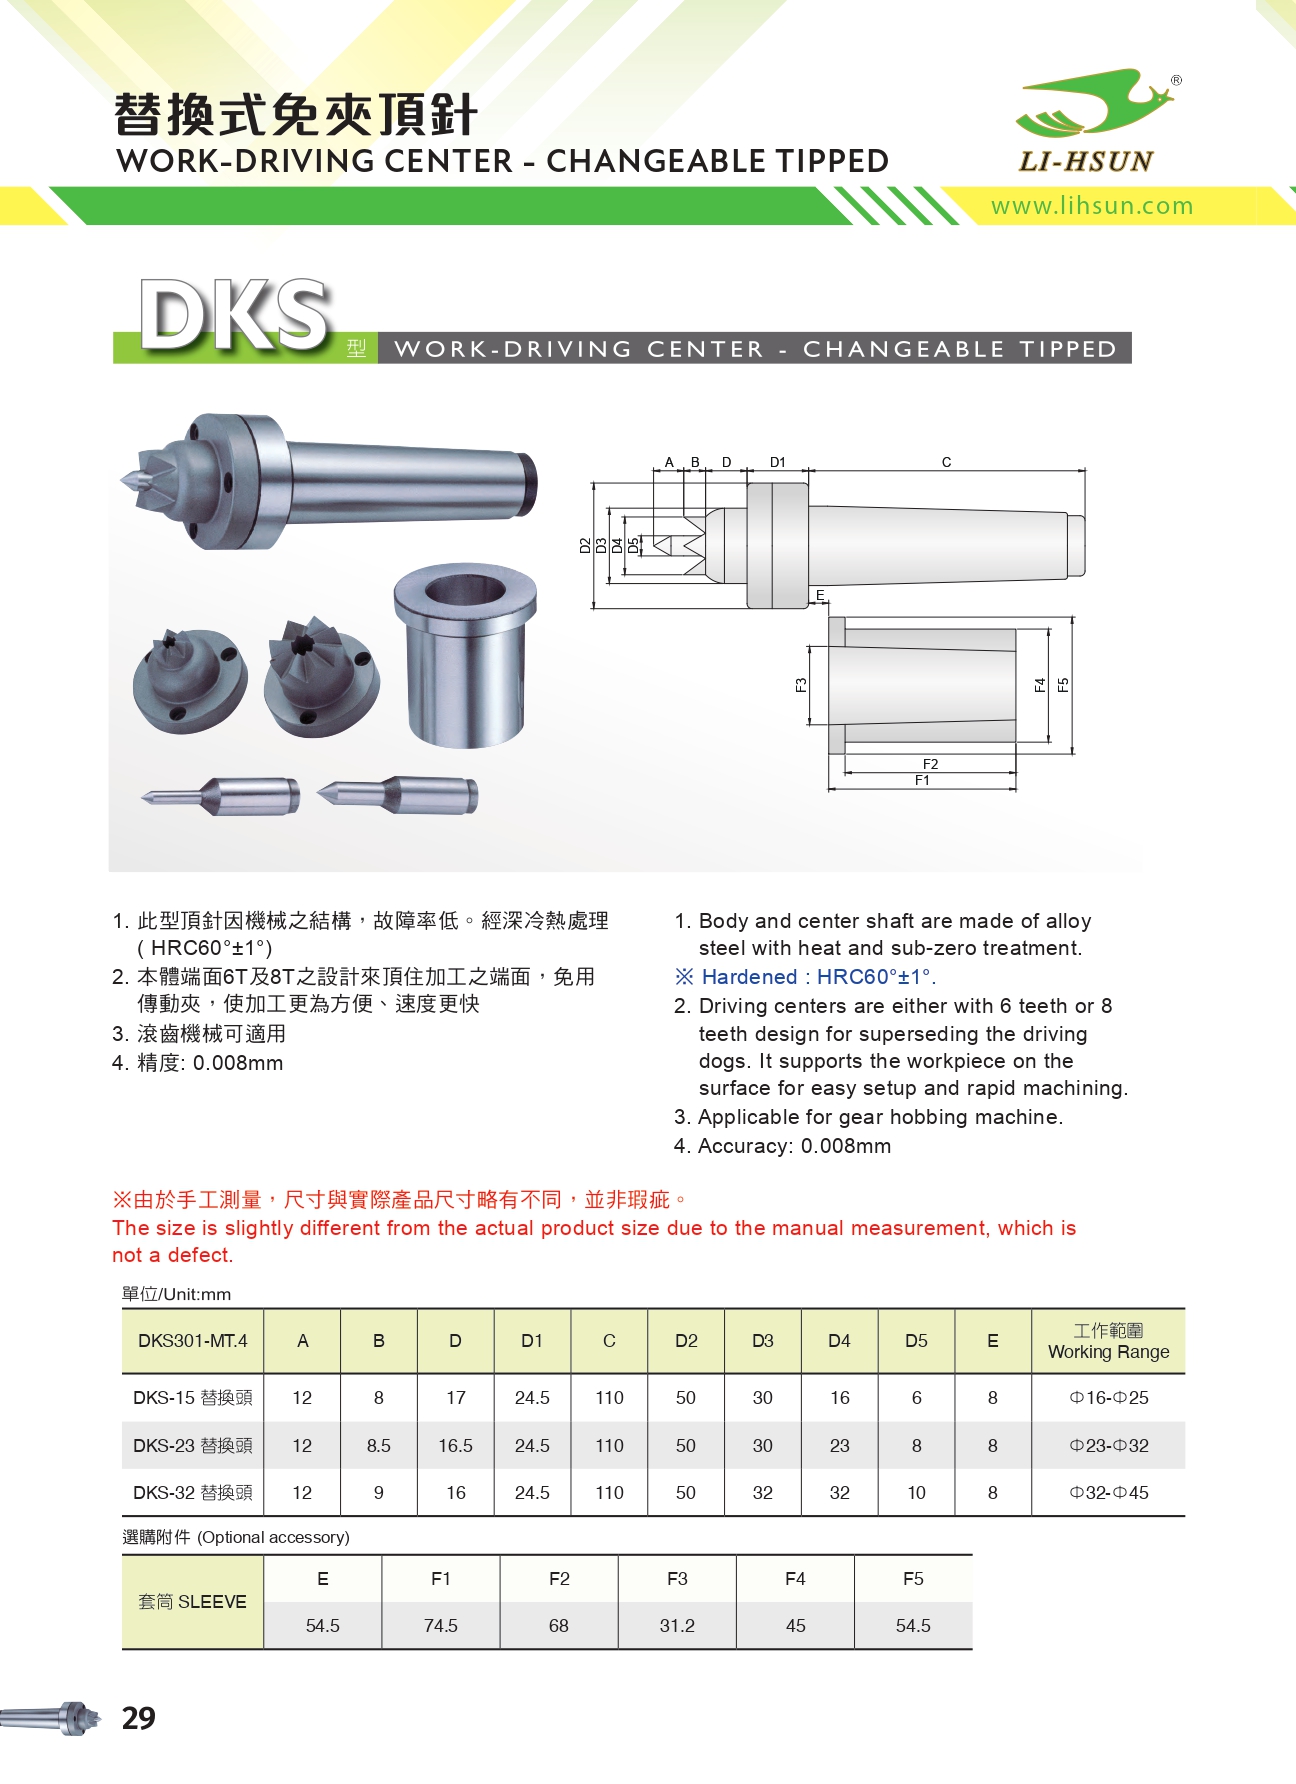 免夾頂針-DKS 型(替換式)